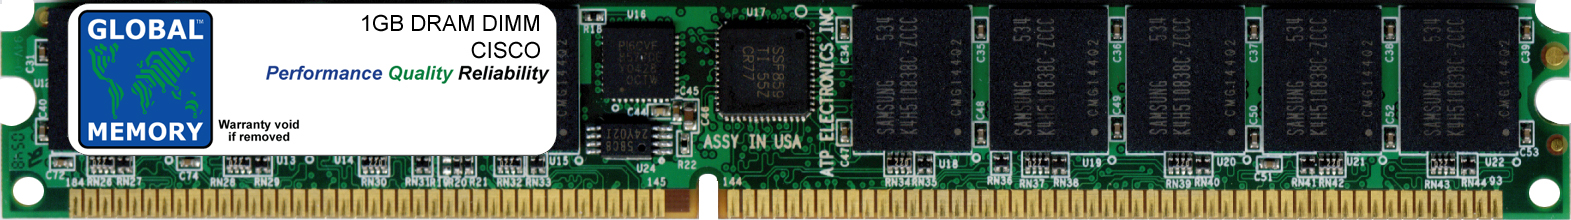 1GB DRAM DIMM MEMORY RAM FOR CISCO 2951 ROUTER (MEM-2951-1GB)